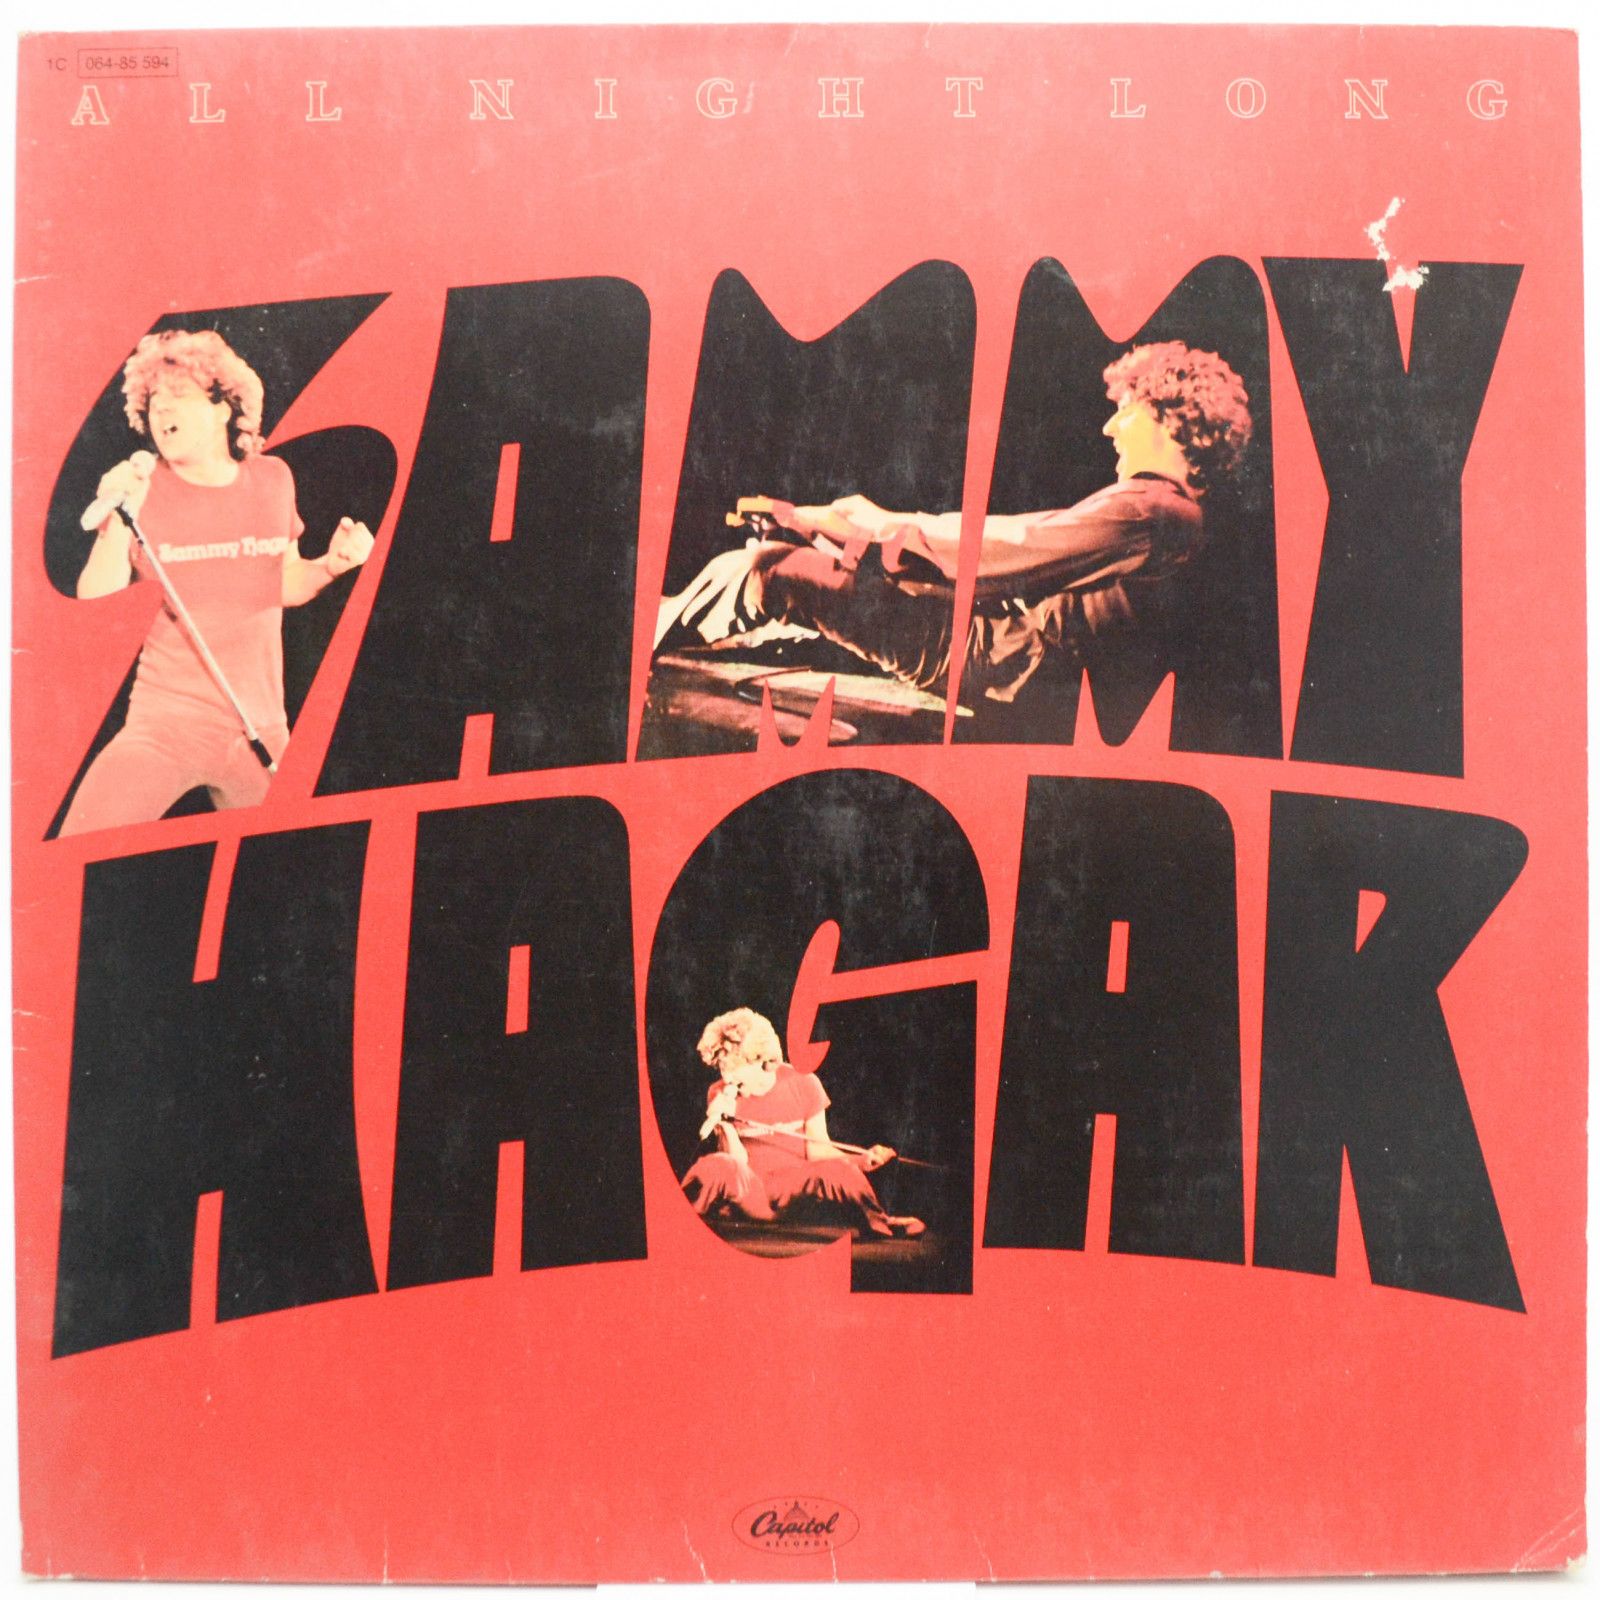 Sammy Hagar — All Night Long, 1978